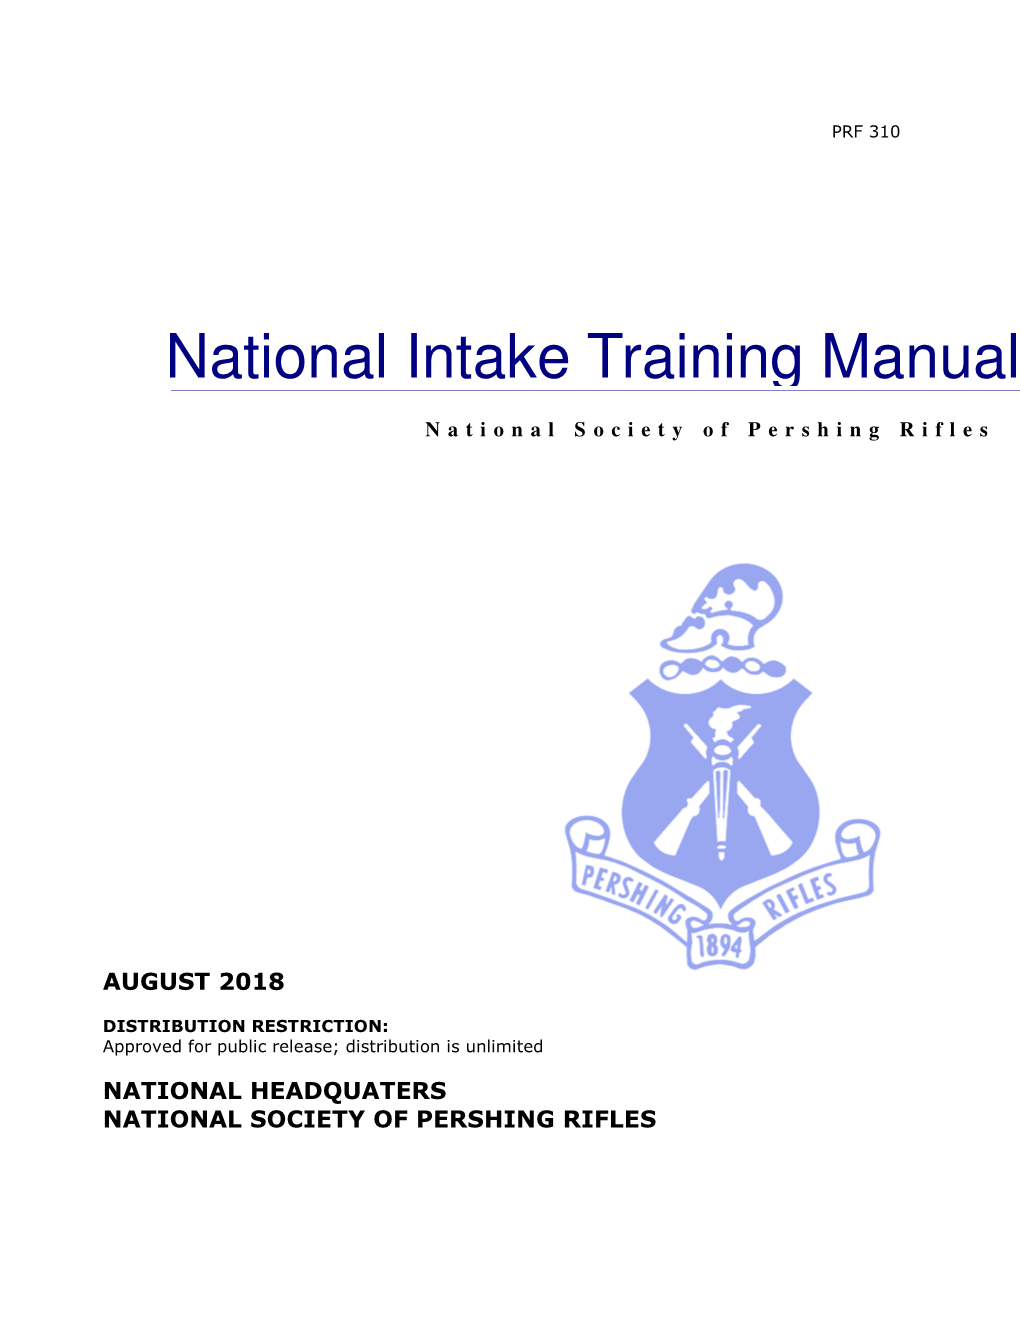 National Intake Training Manual